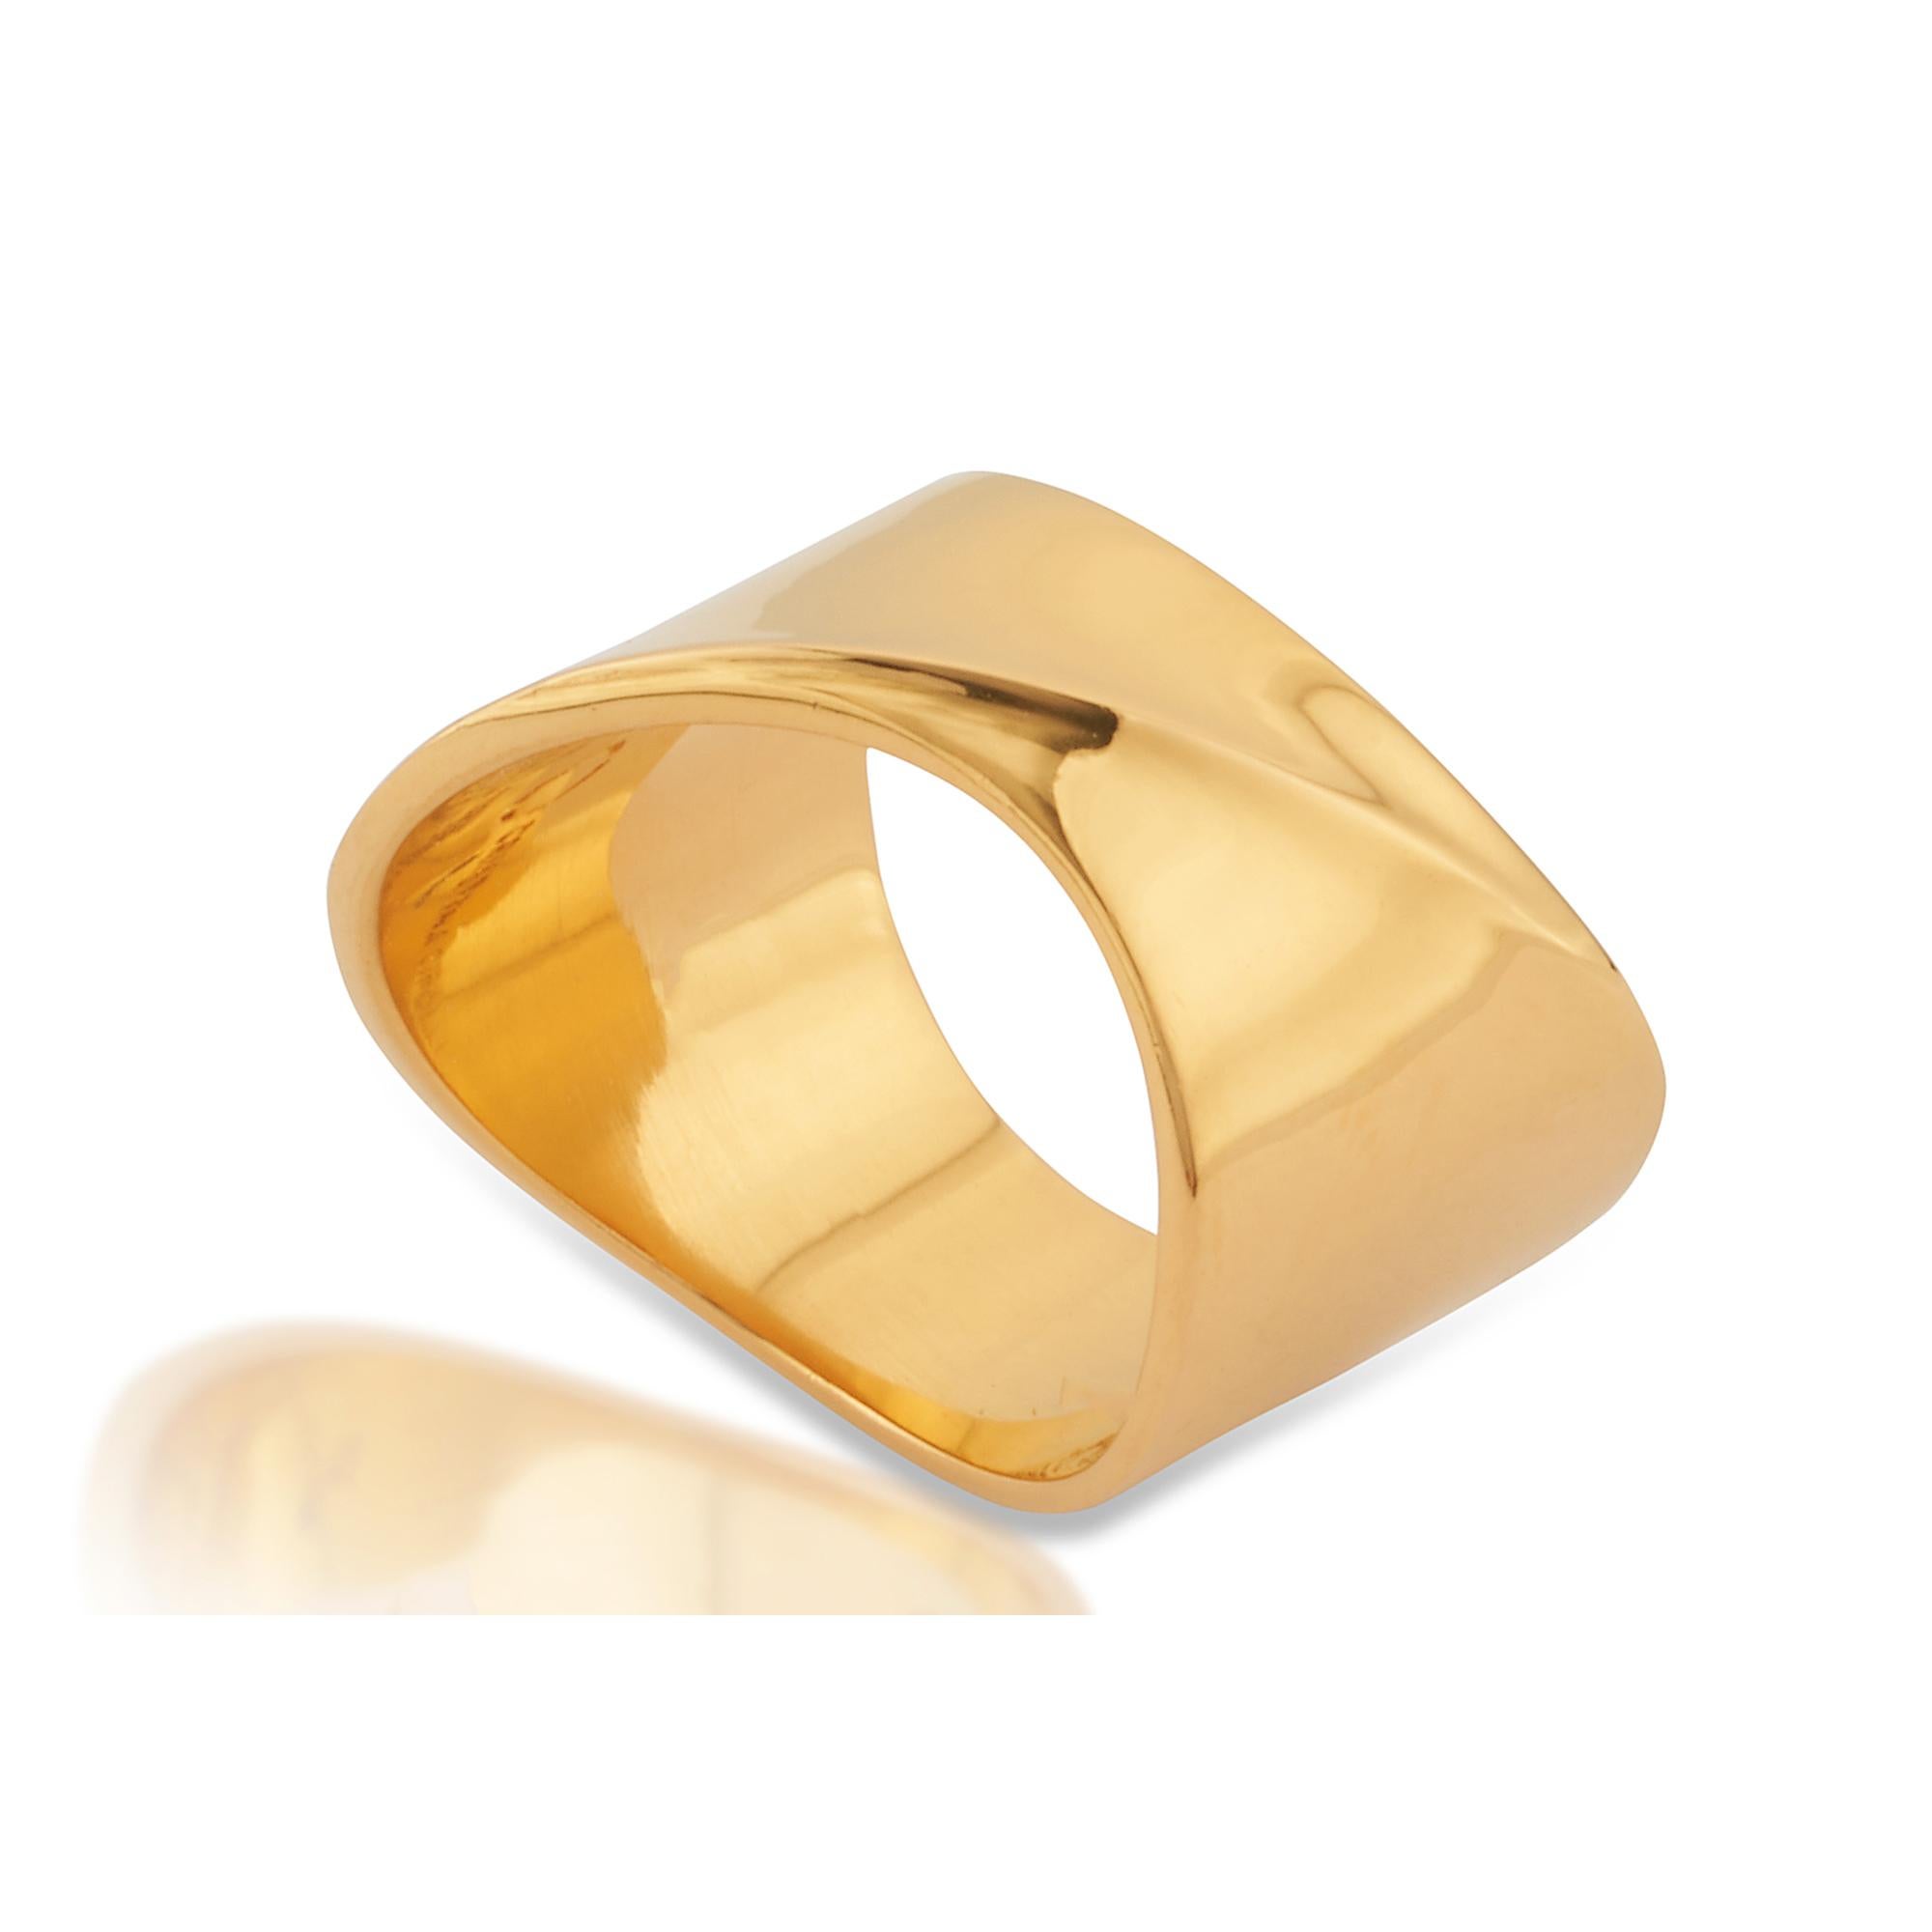 Unisex-Ring mit minimalistischem und kühnem Design. Perfekt als Einzelring oder horizontal gestapelt mit mehreren Ringen aus der gleichen Collection'S. 
Größe UK P - US 7 1/2 auf Lager, weitere Größen auf Anfrage erhältlich, Sonderanfertigungen